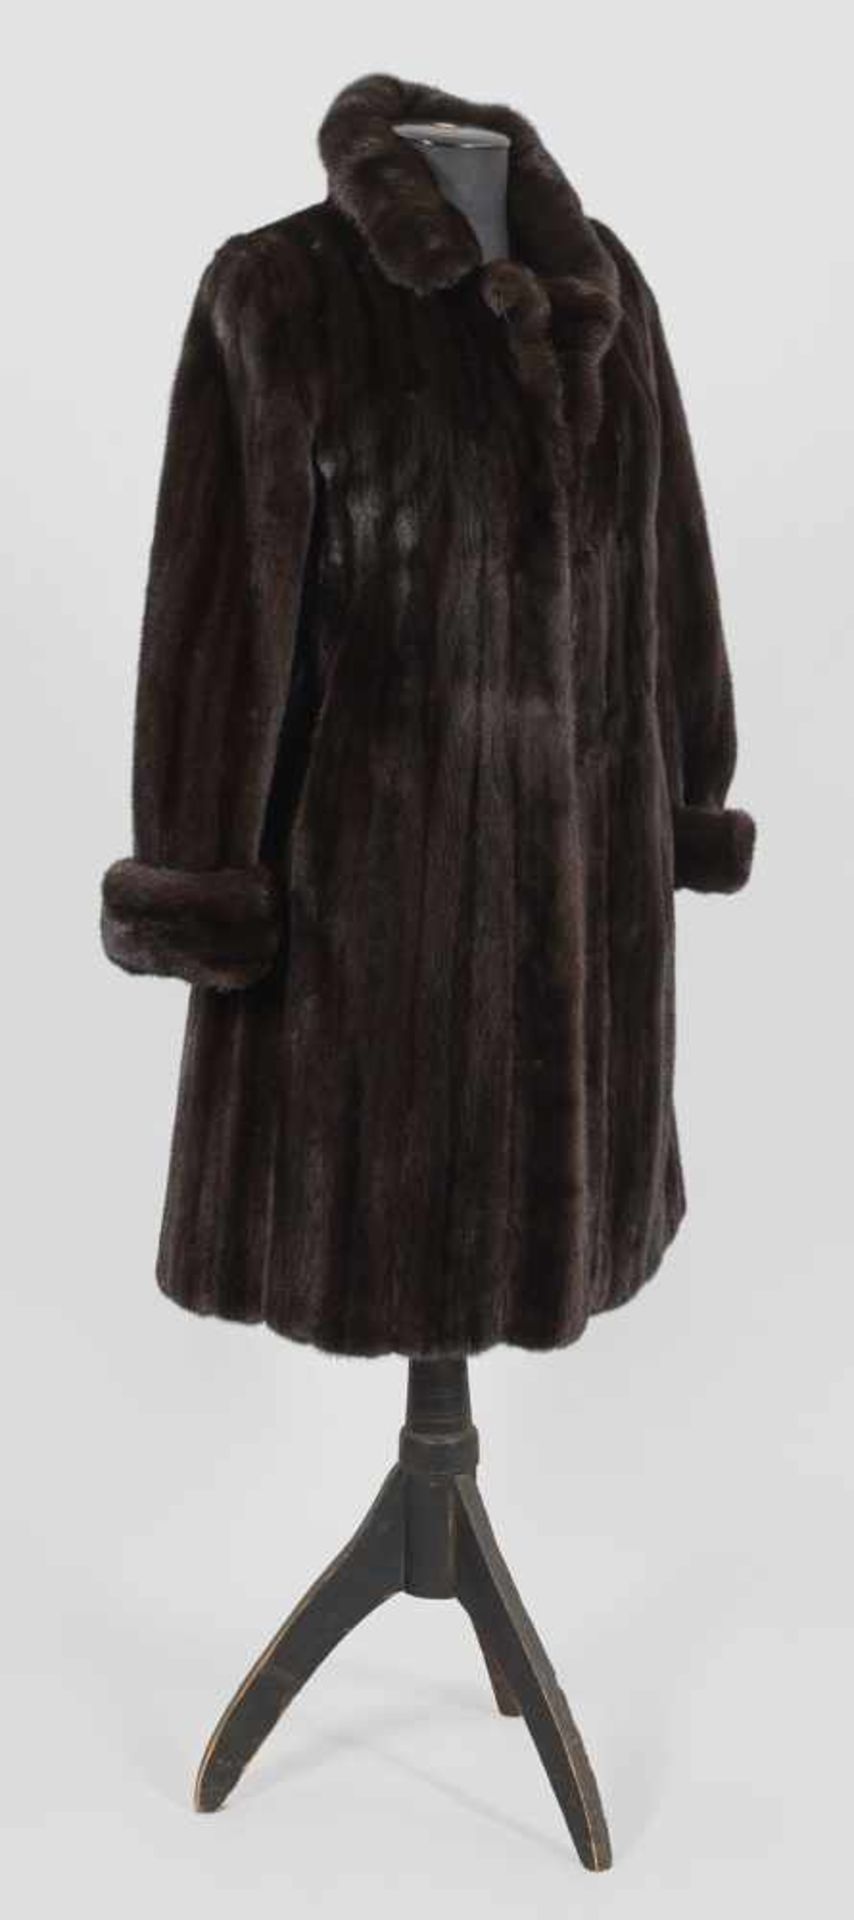 Damen-NerzmantelKnielanger, ausgestellt geschnittener Mantel aus dunkelbraunem, ausgelassen